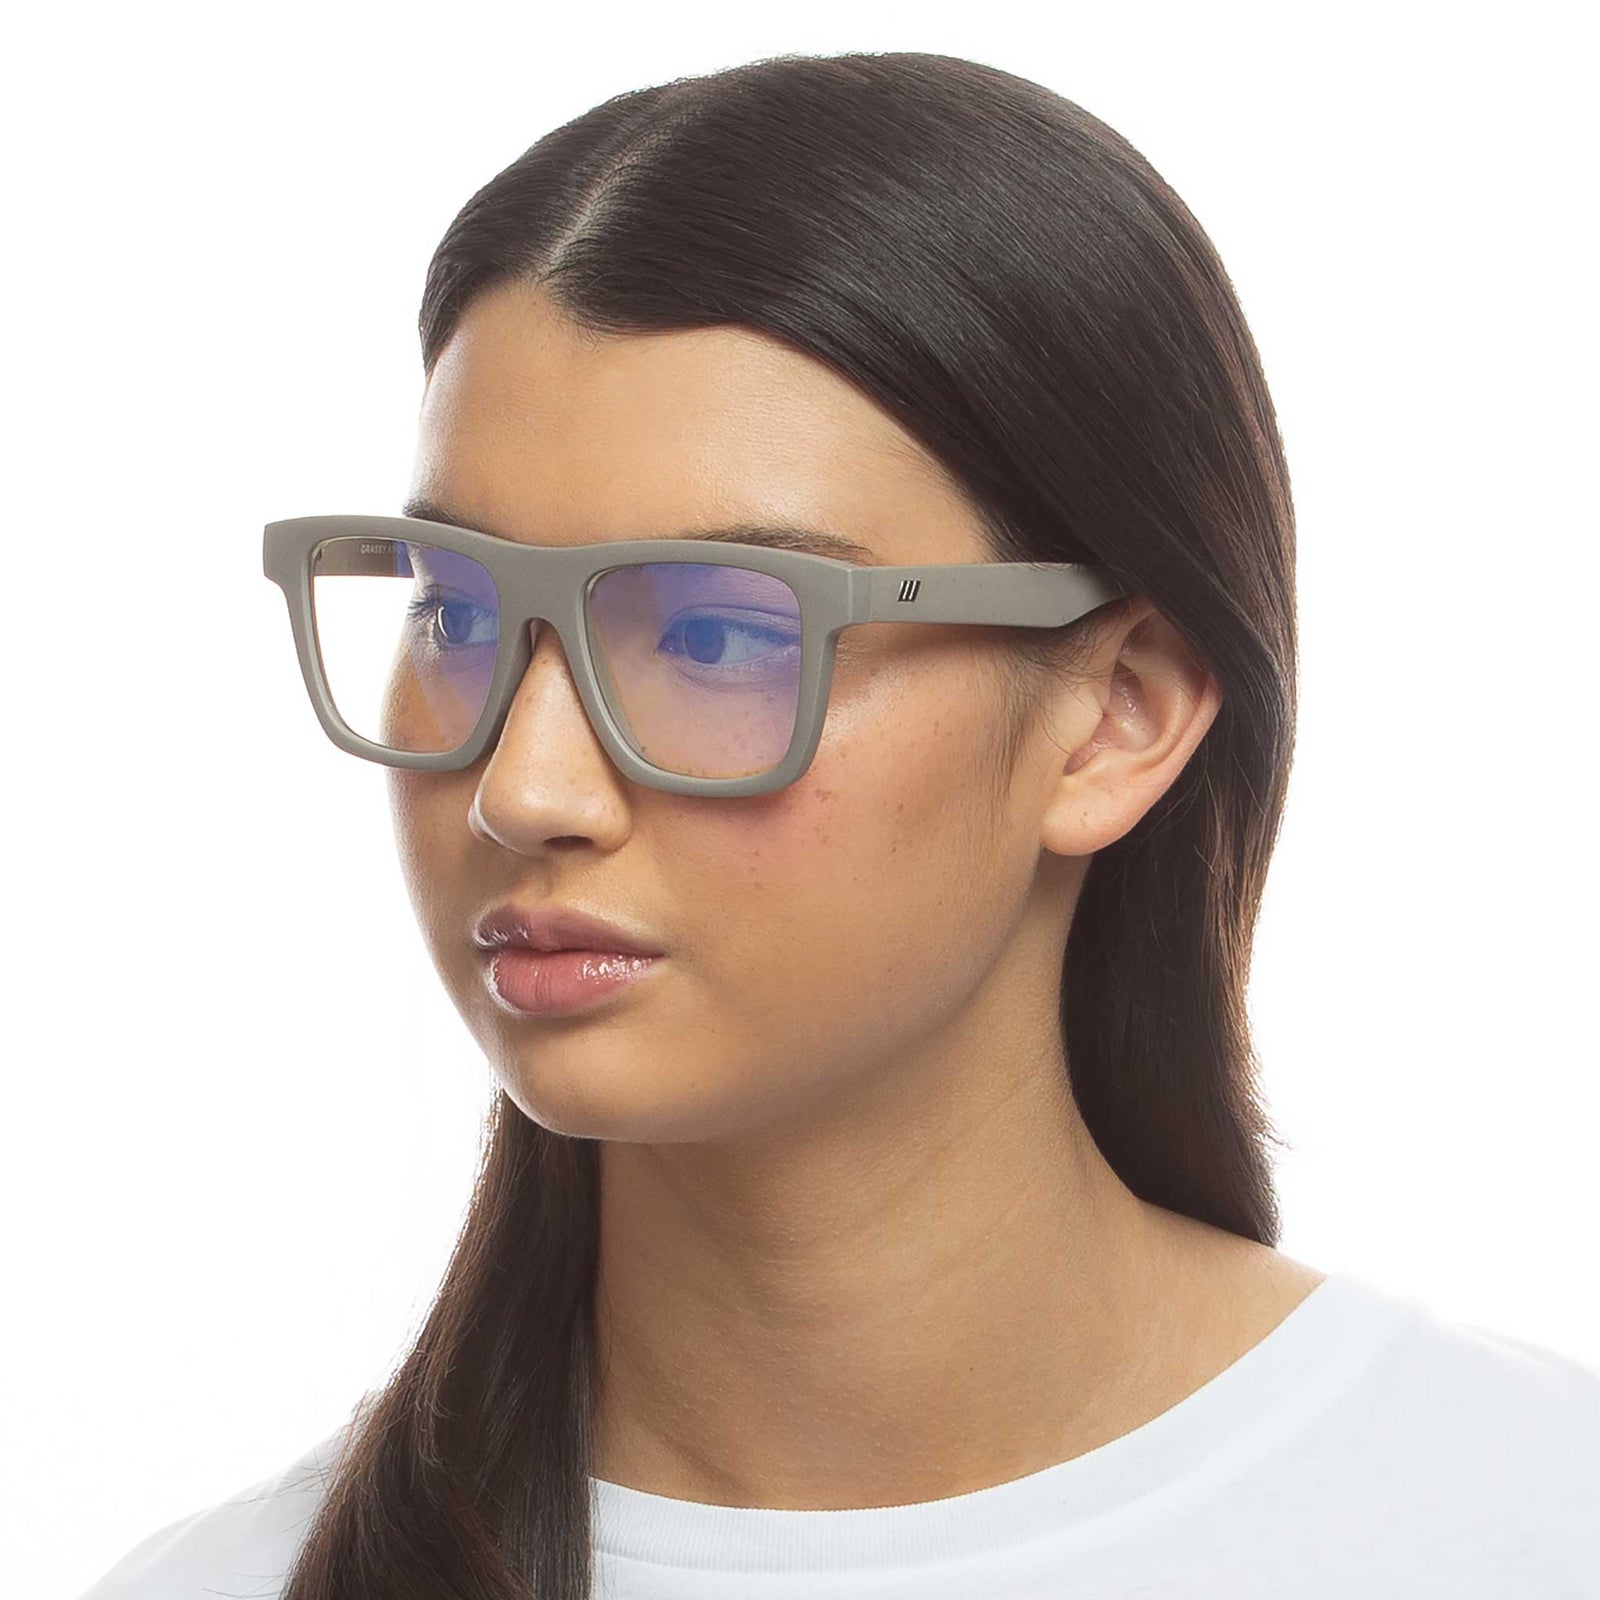 Men's New Square Frame Sunglasses, Unisex Trendy Dust Proof